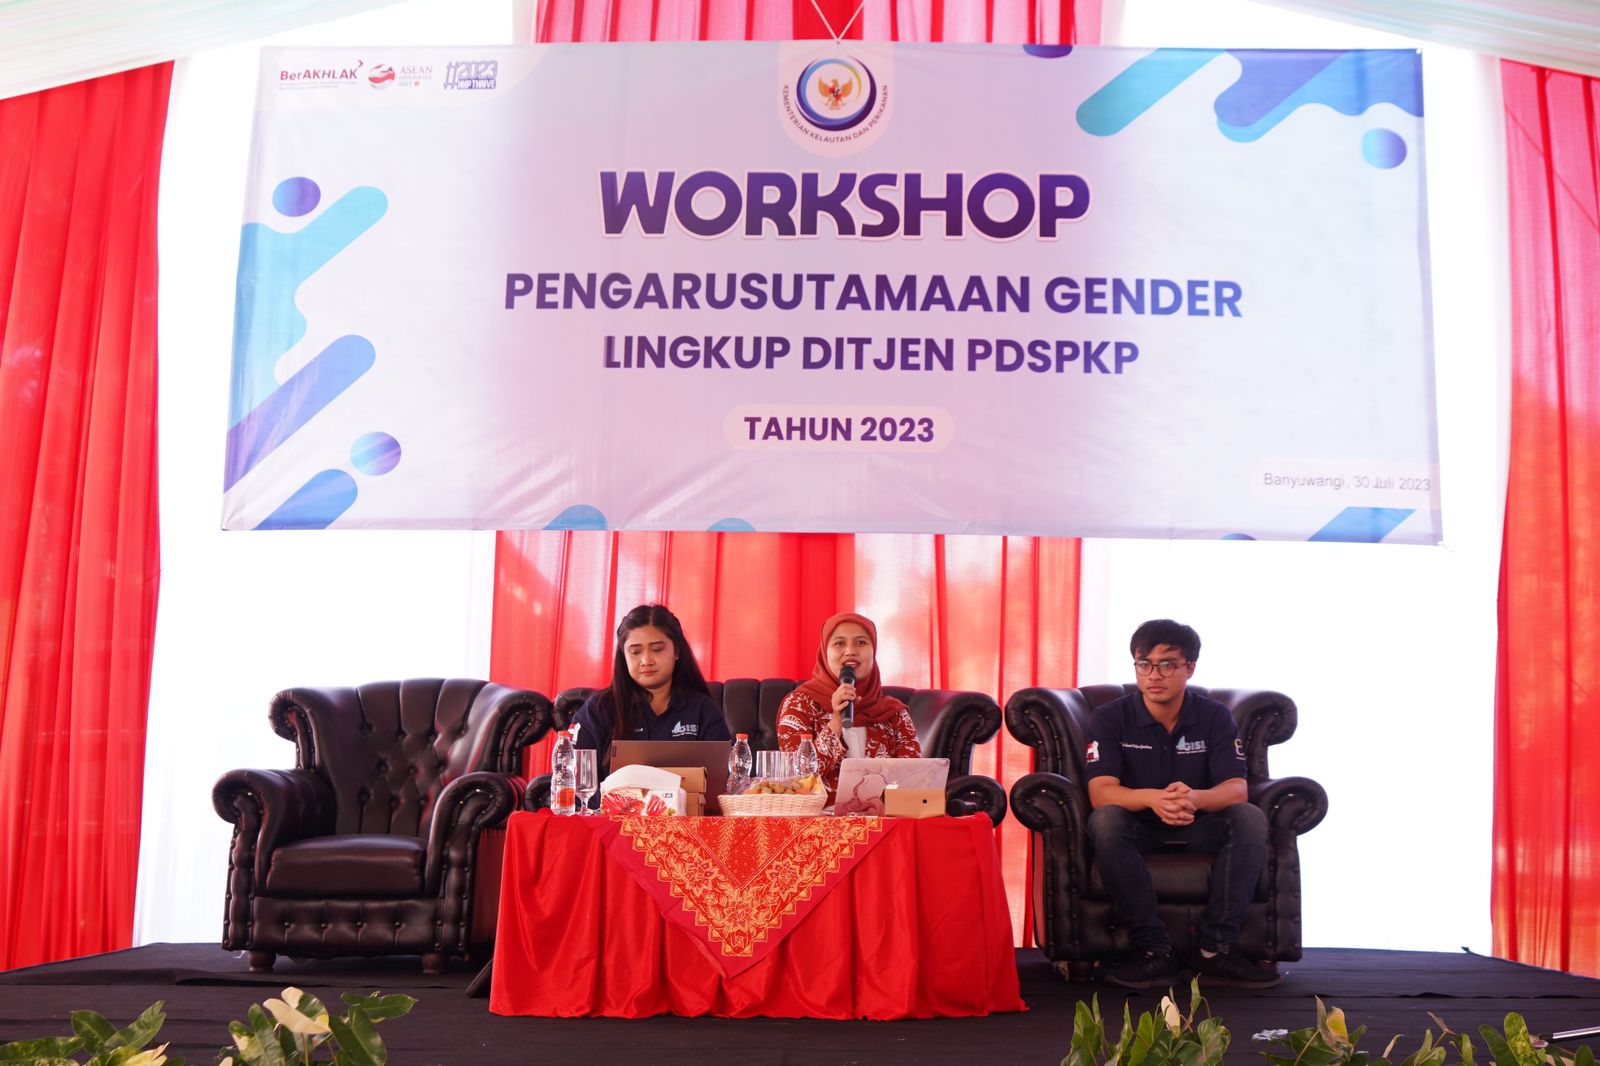 Workshop Pengarusutamaan Gender Lingkup Ditjen PDSPKP